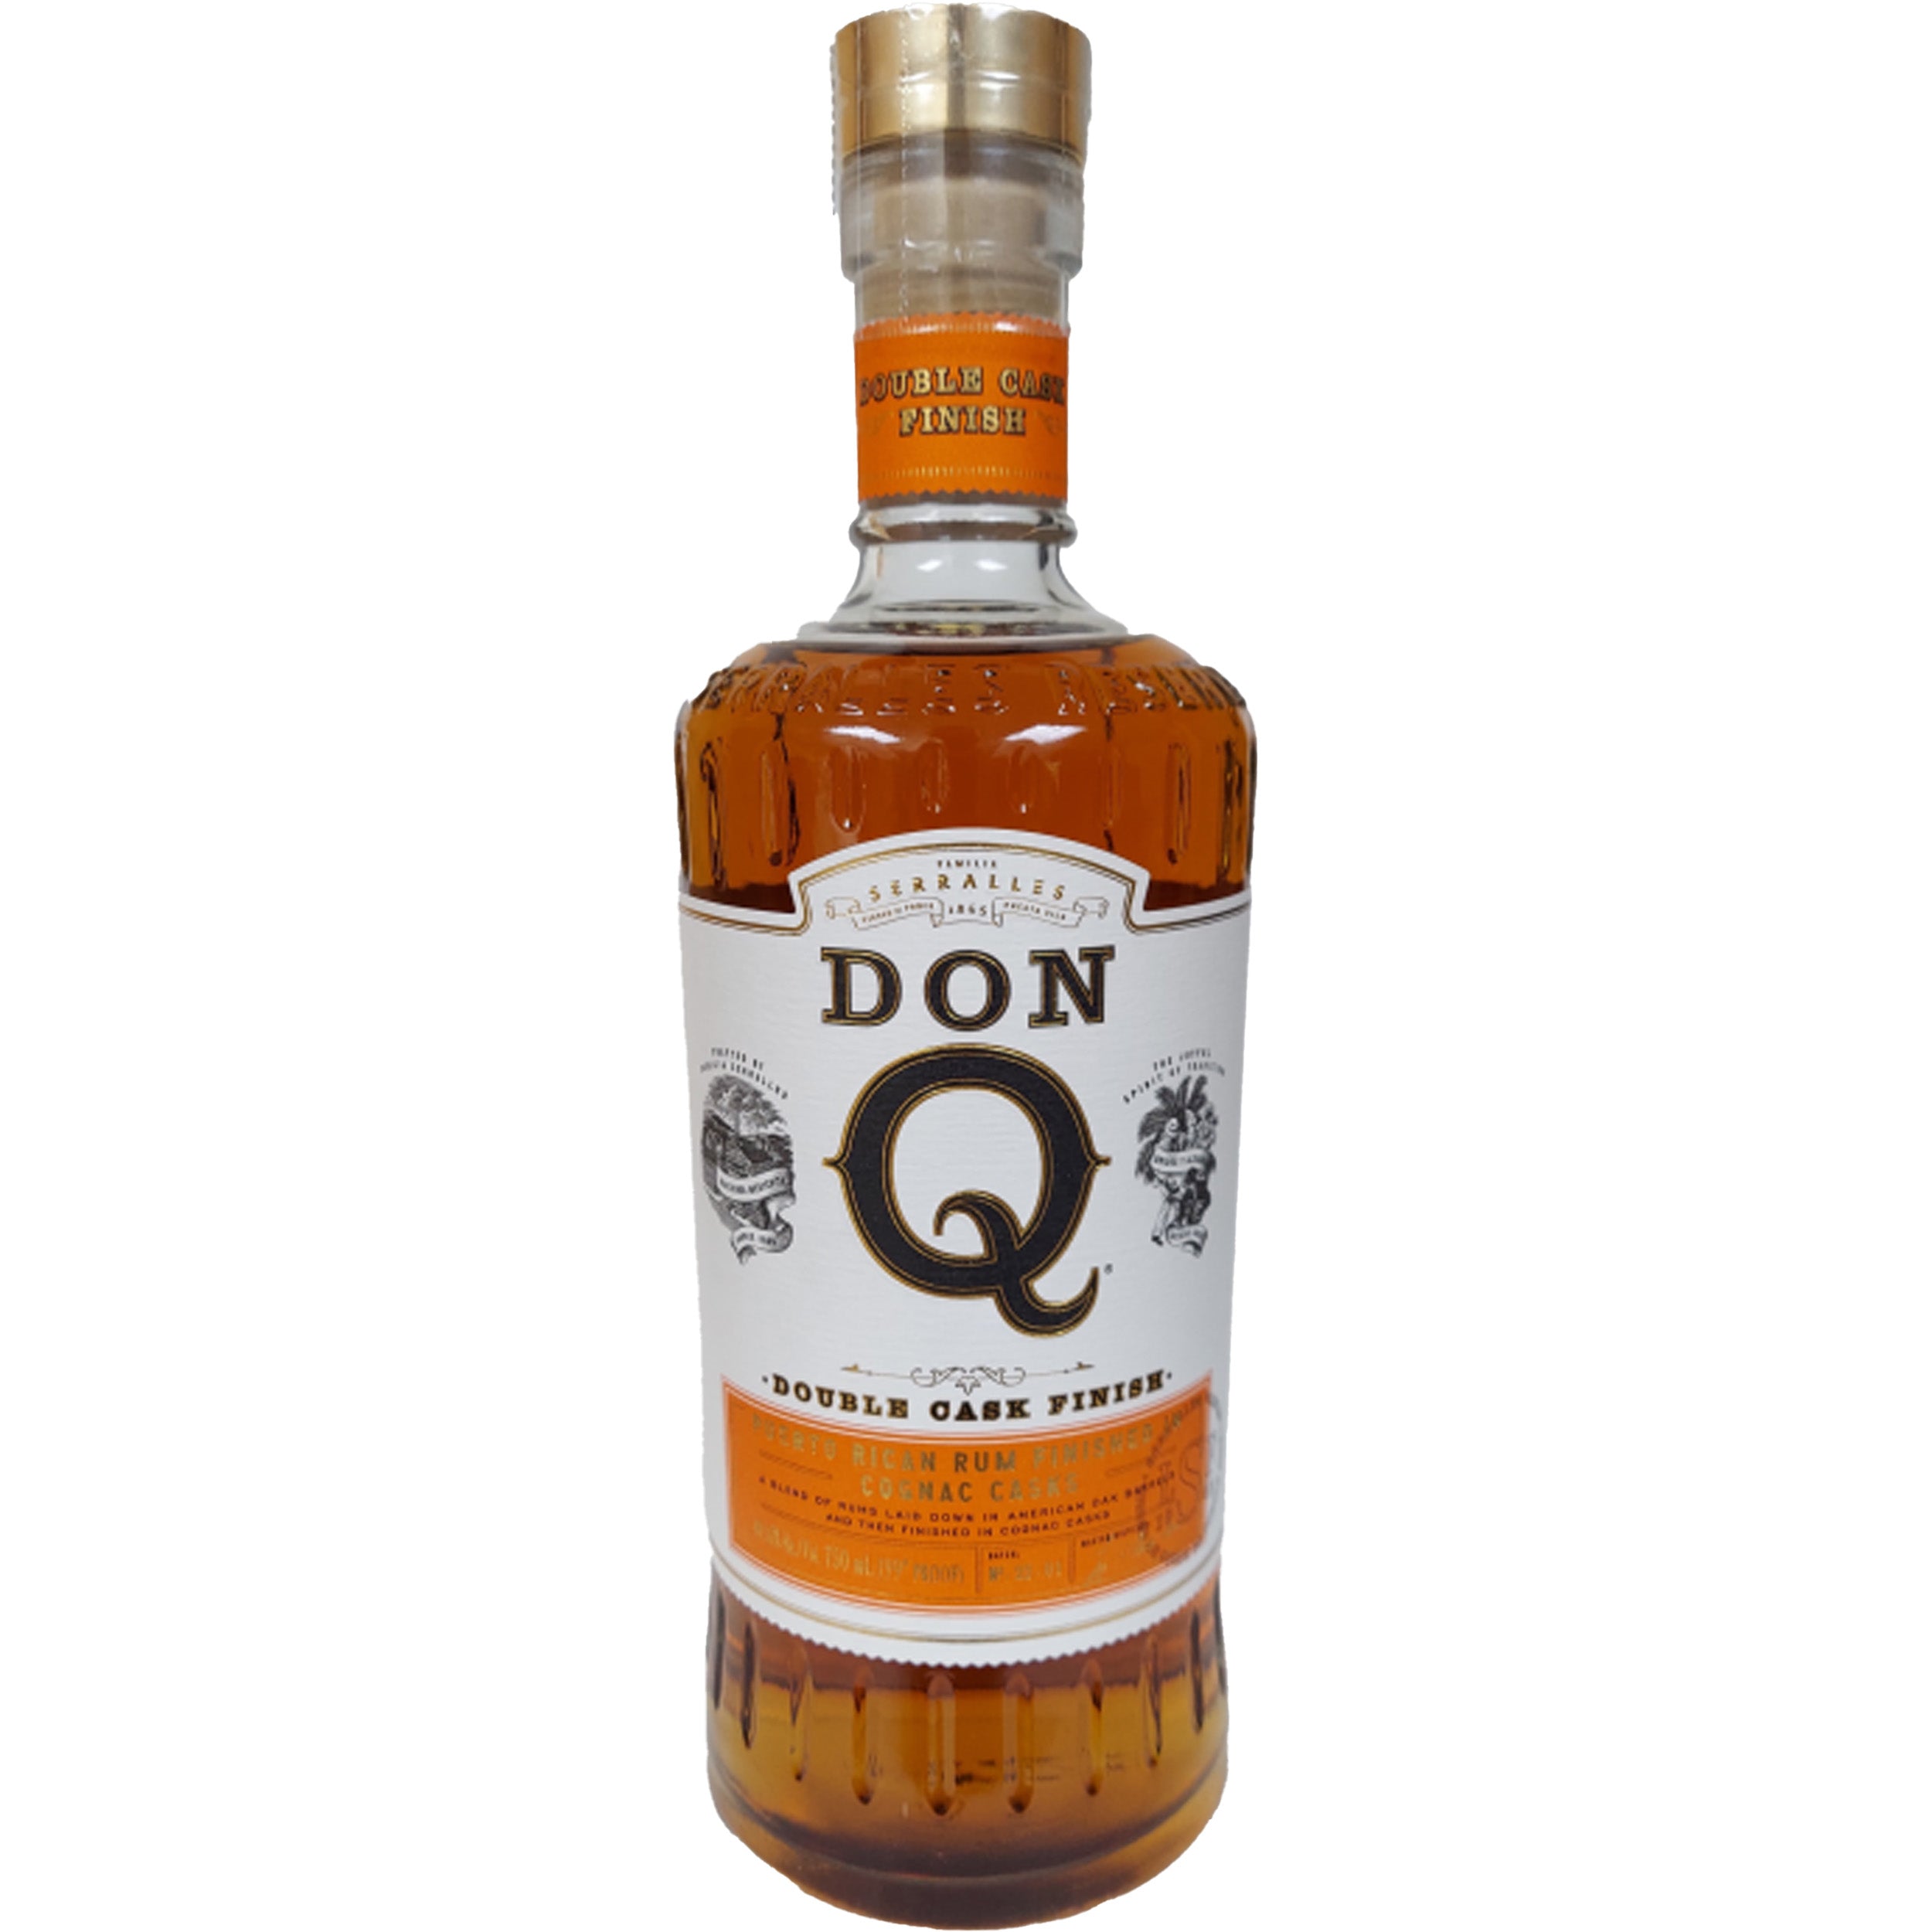 Don Q Double Cask Cognac Finish Rum